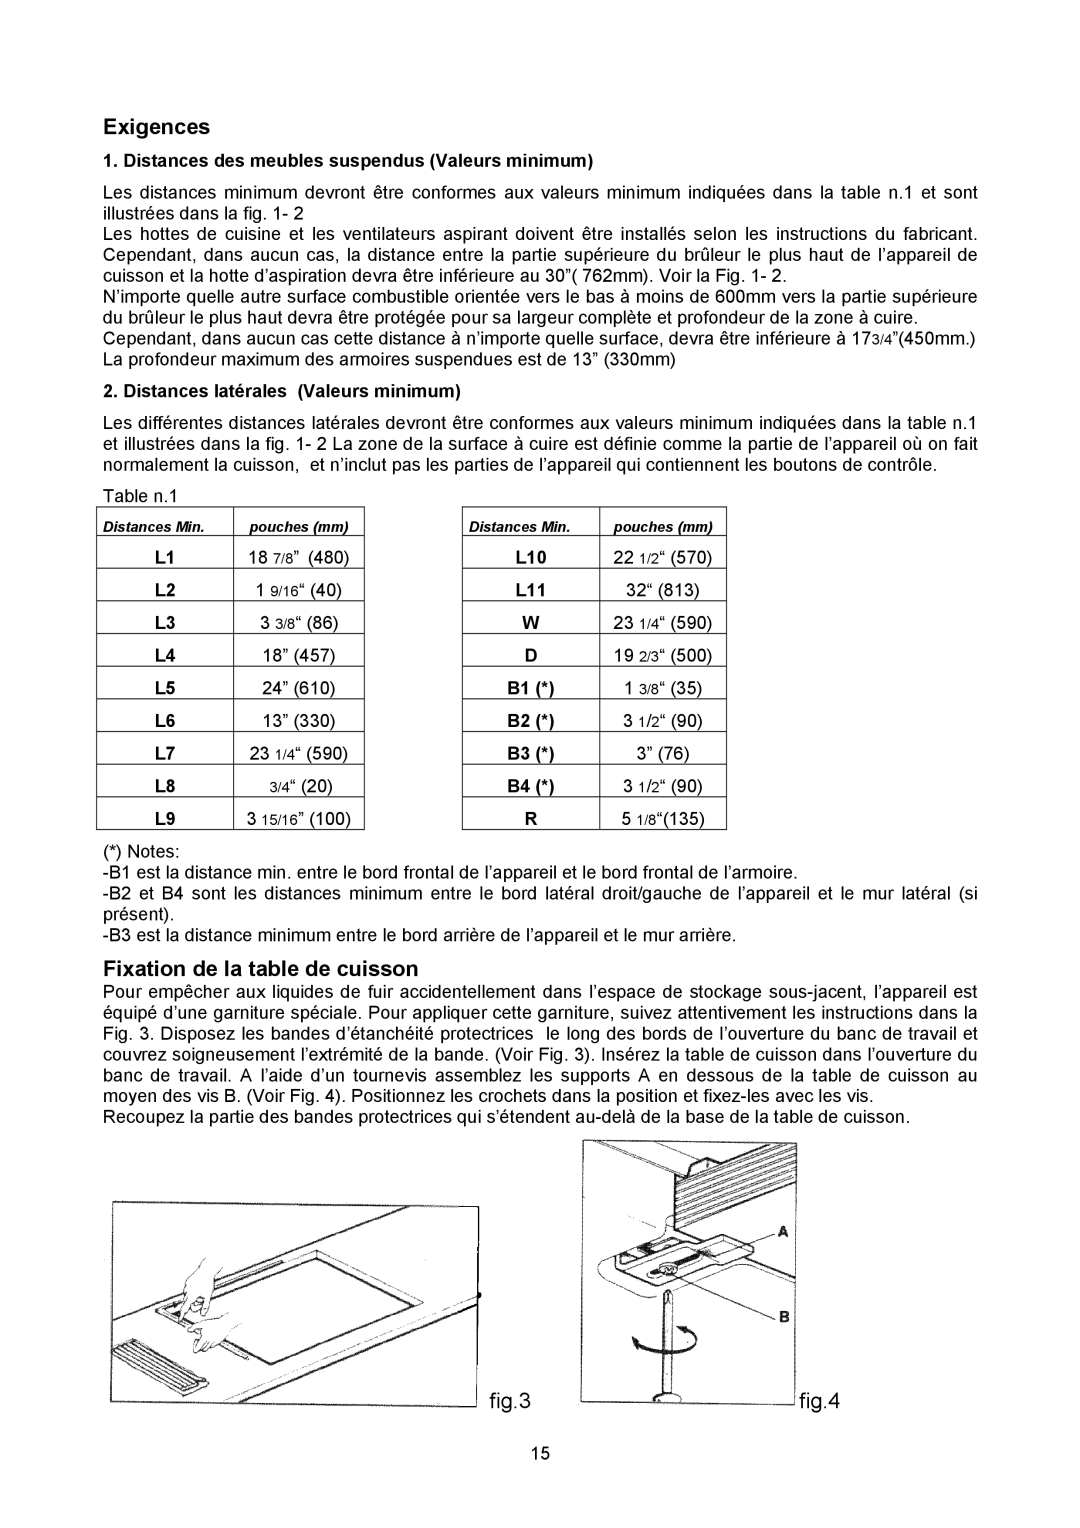 Bertazzoni P24 4 00 X manual Exigences, Fixation de la table de cuisson, Distances des meubles suspendus Valeurs minimum 